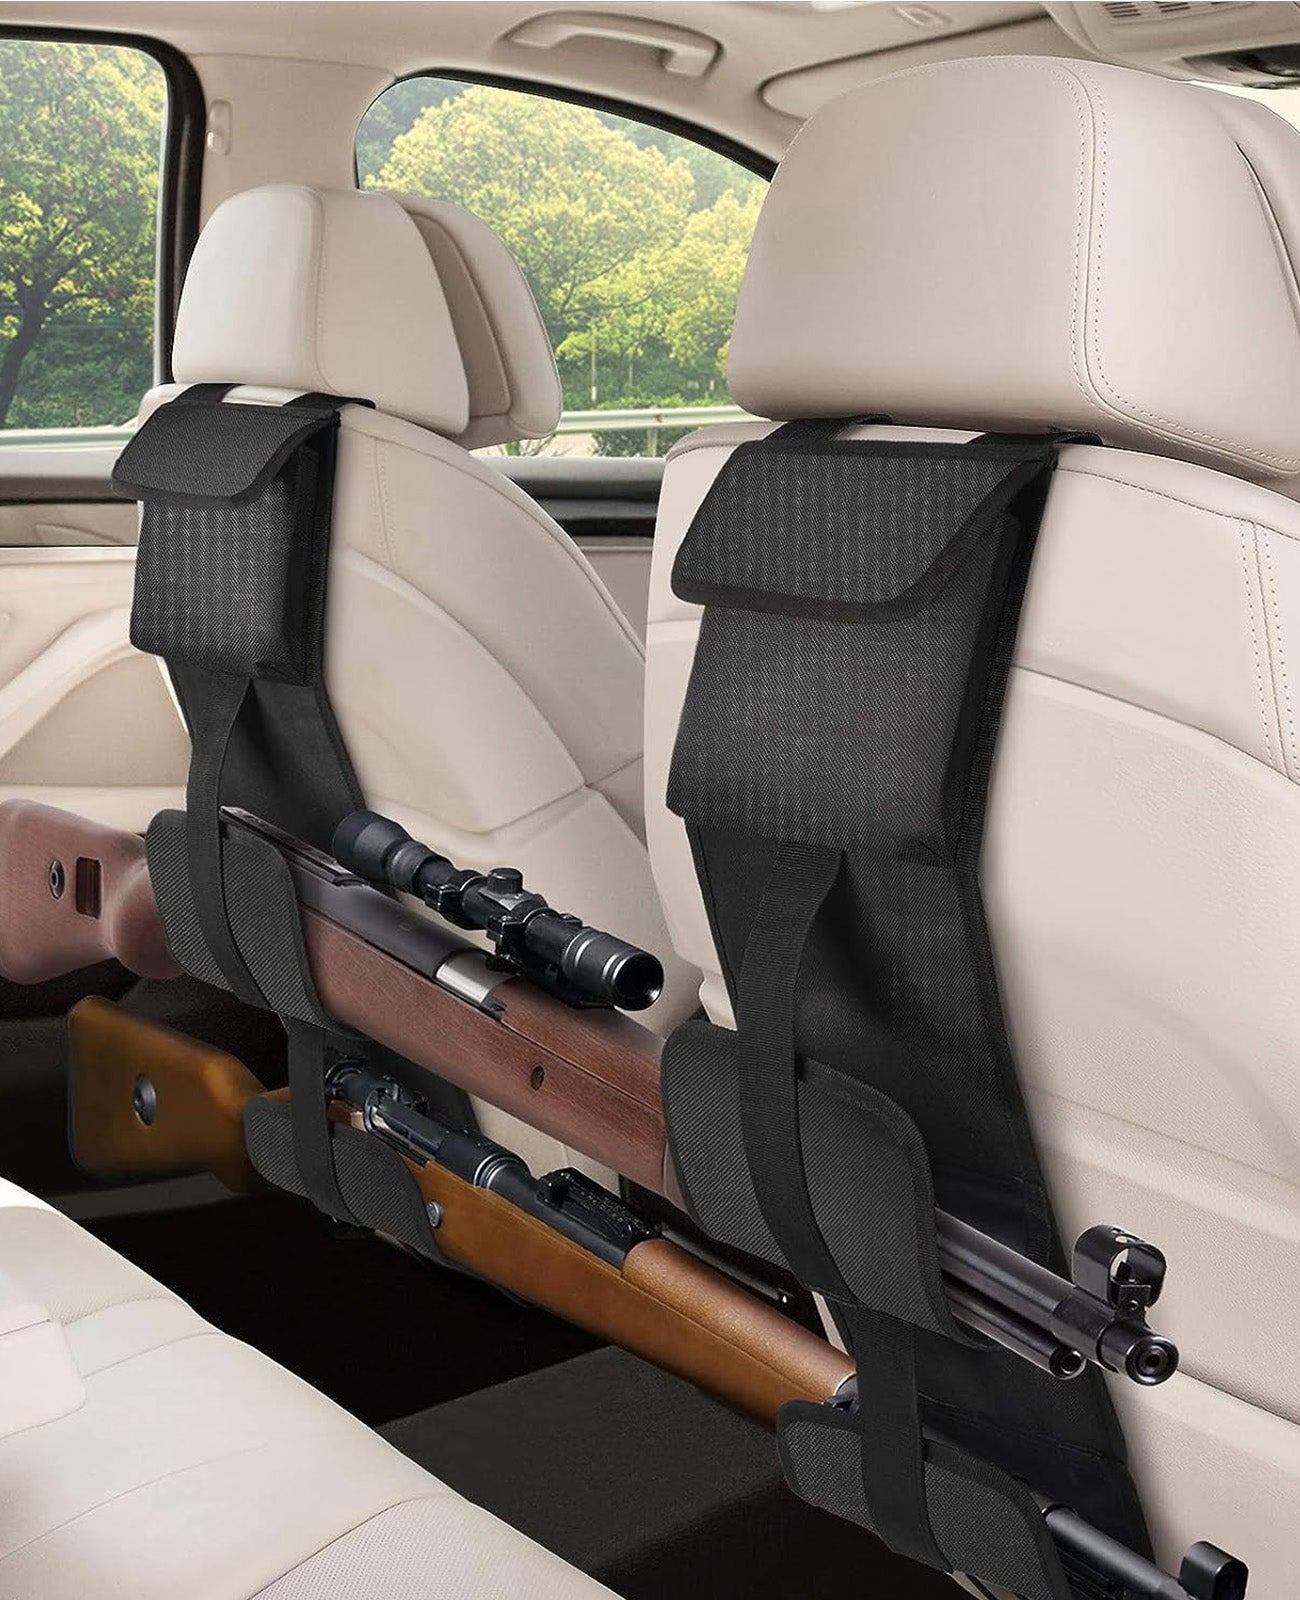 2pcs car concealed backseat shotguns holder with adjustment belts